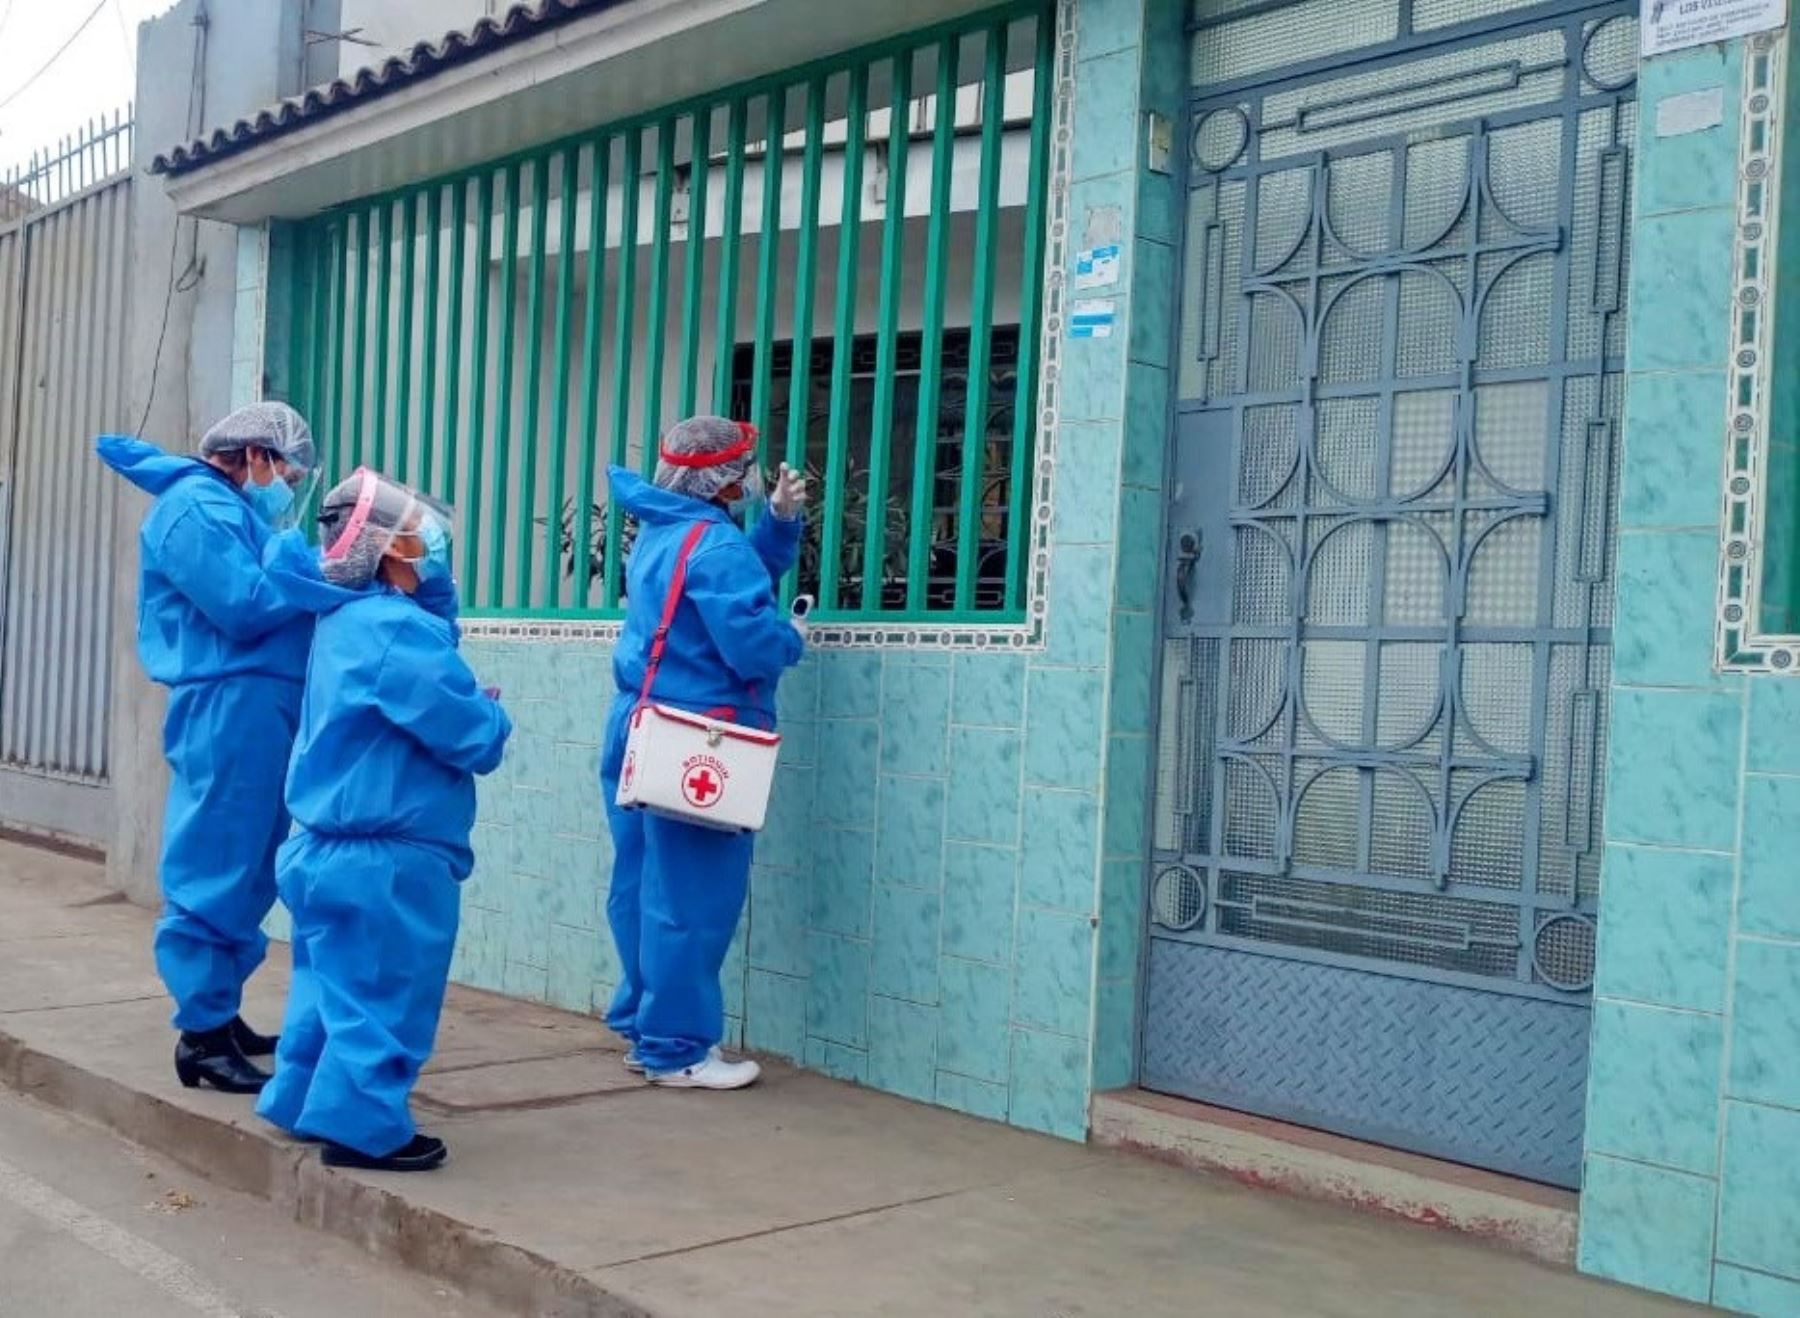 Se inicia la Operación Tayta en la ciudad de Huaral, al norte de Lima, para detectar posibles casos de coronavirus.